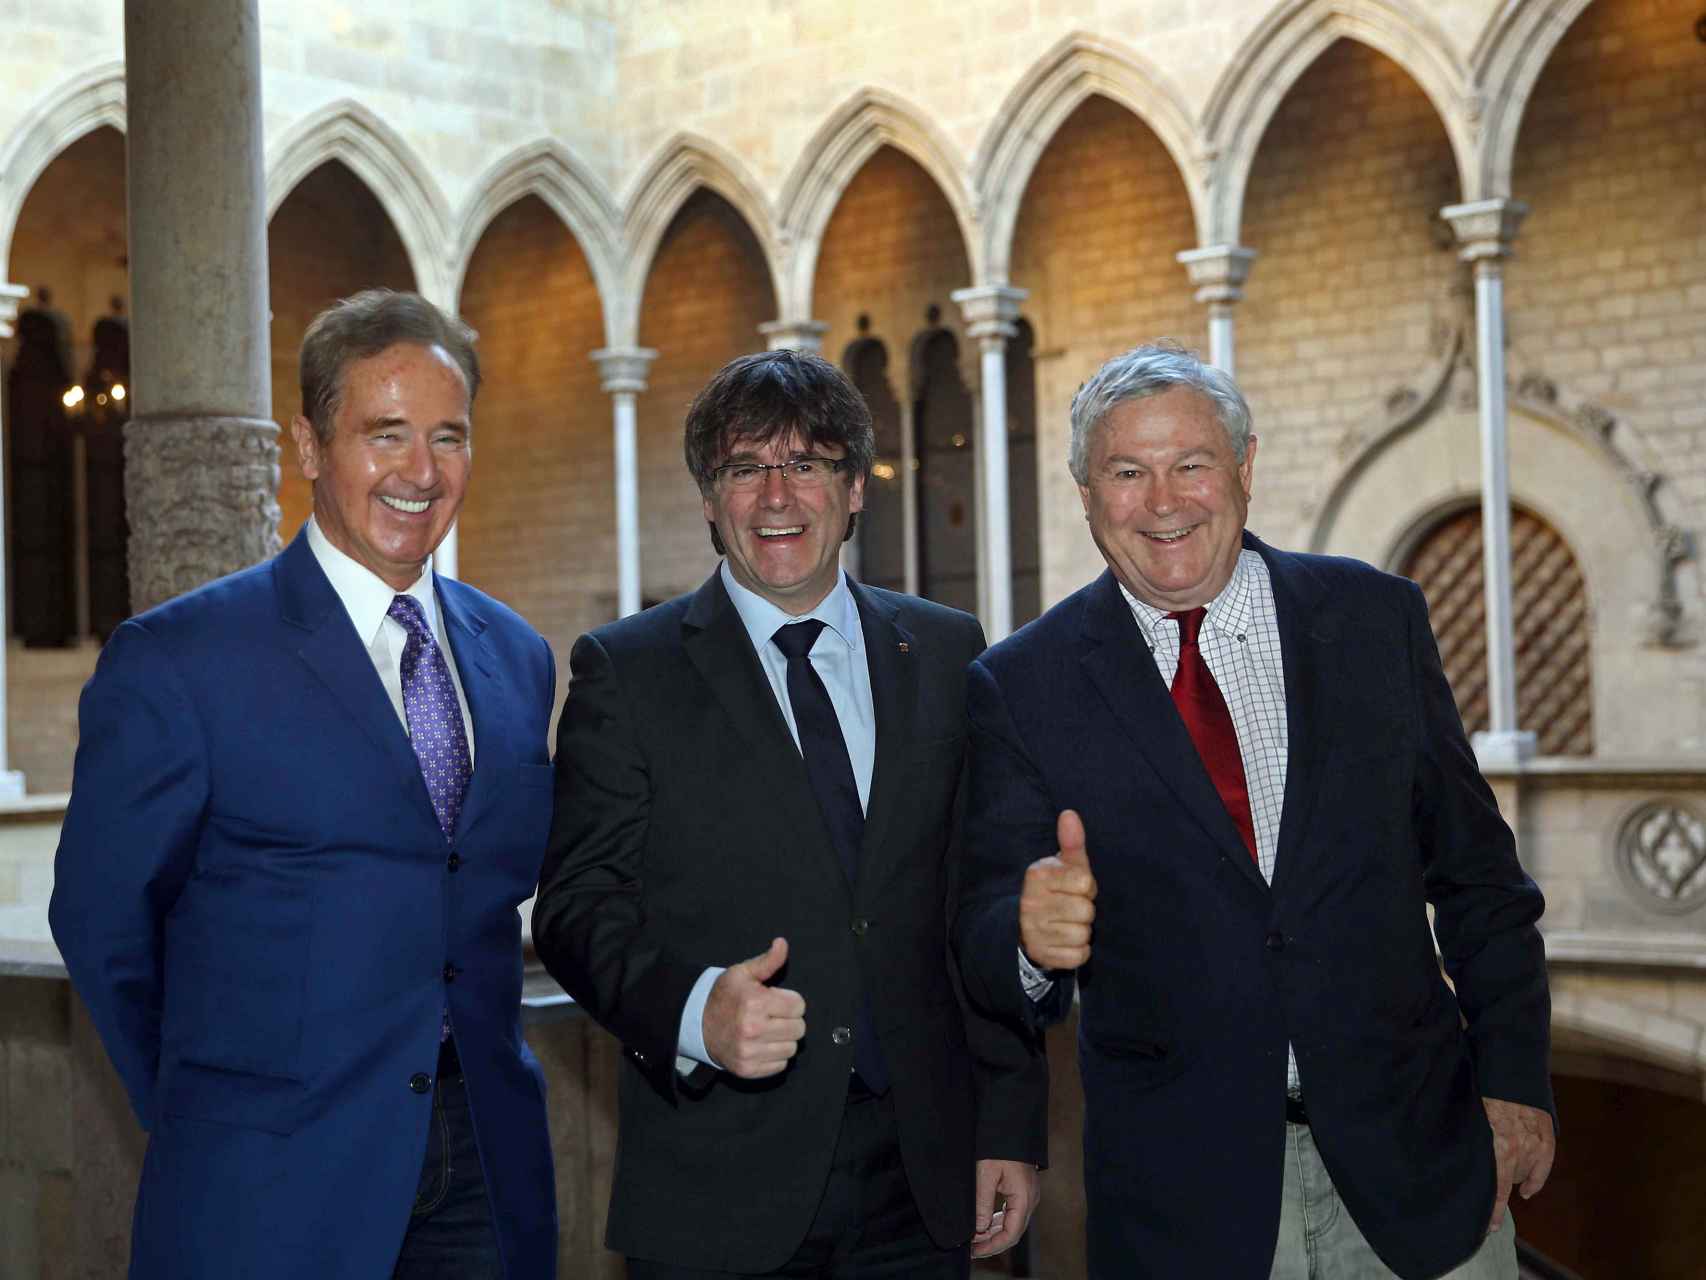 El presidente catalán, Carles Puigdemont, con los congresistas estadounidenses Brian Higgins y Dana Rohrabacher.